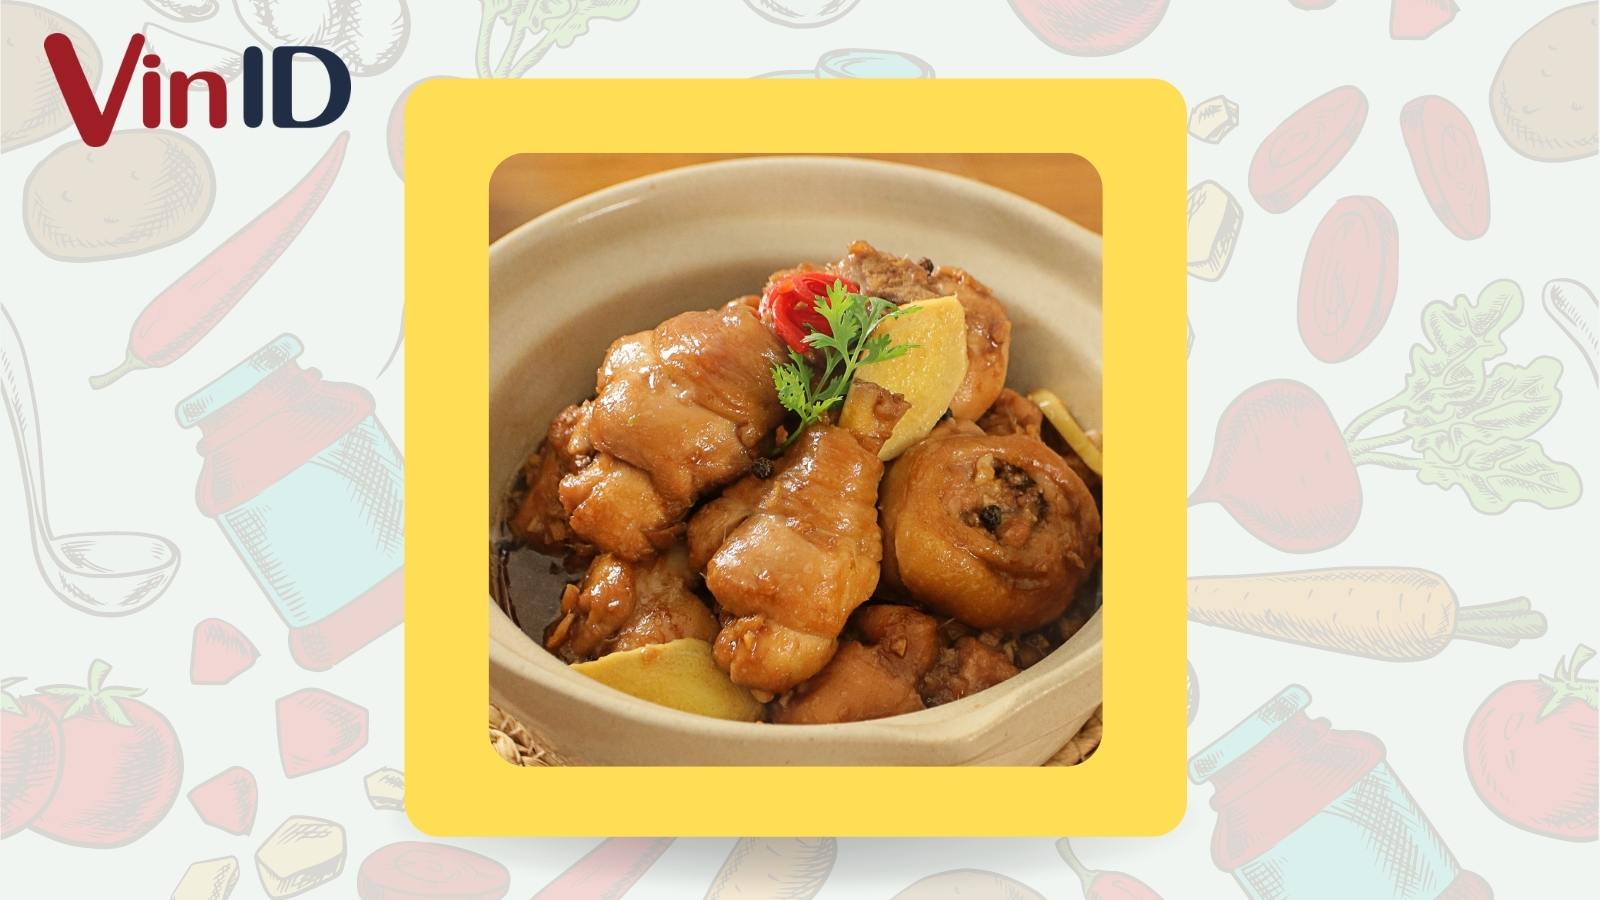 Gà kho VinID - Làm giàu vị quê Việt, món gà kho của VinID sẽ là sự lựa chọn hoàn hảo cho những bữa ăn gia đình hay những bữa tiệc tùng nhỏ. Với gia vị đậm đà, món ăn này sẽ thực sự là một trải nghiệm về hương vị đúng nghĩa.